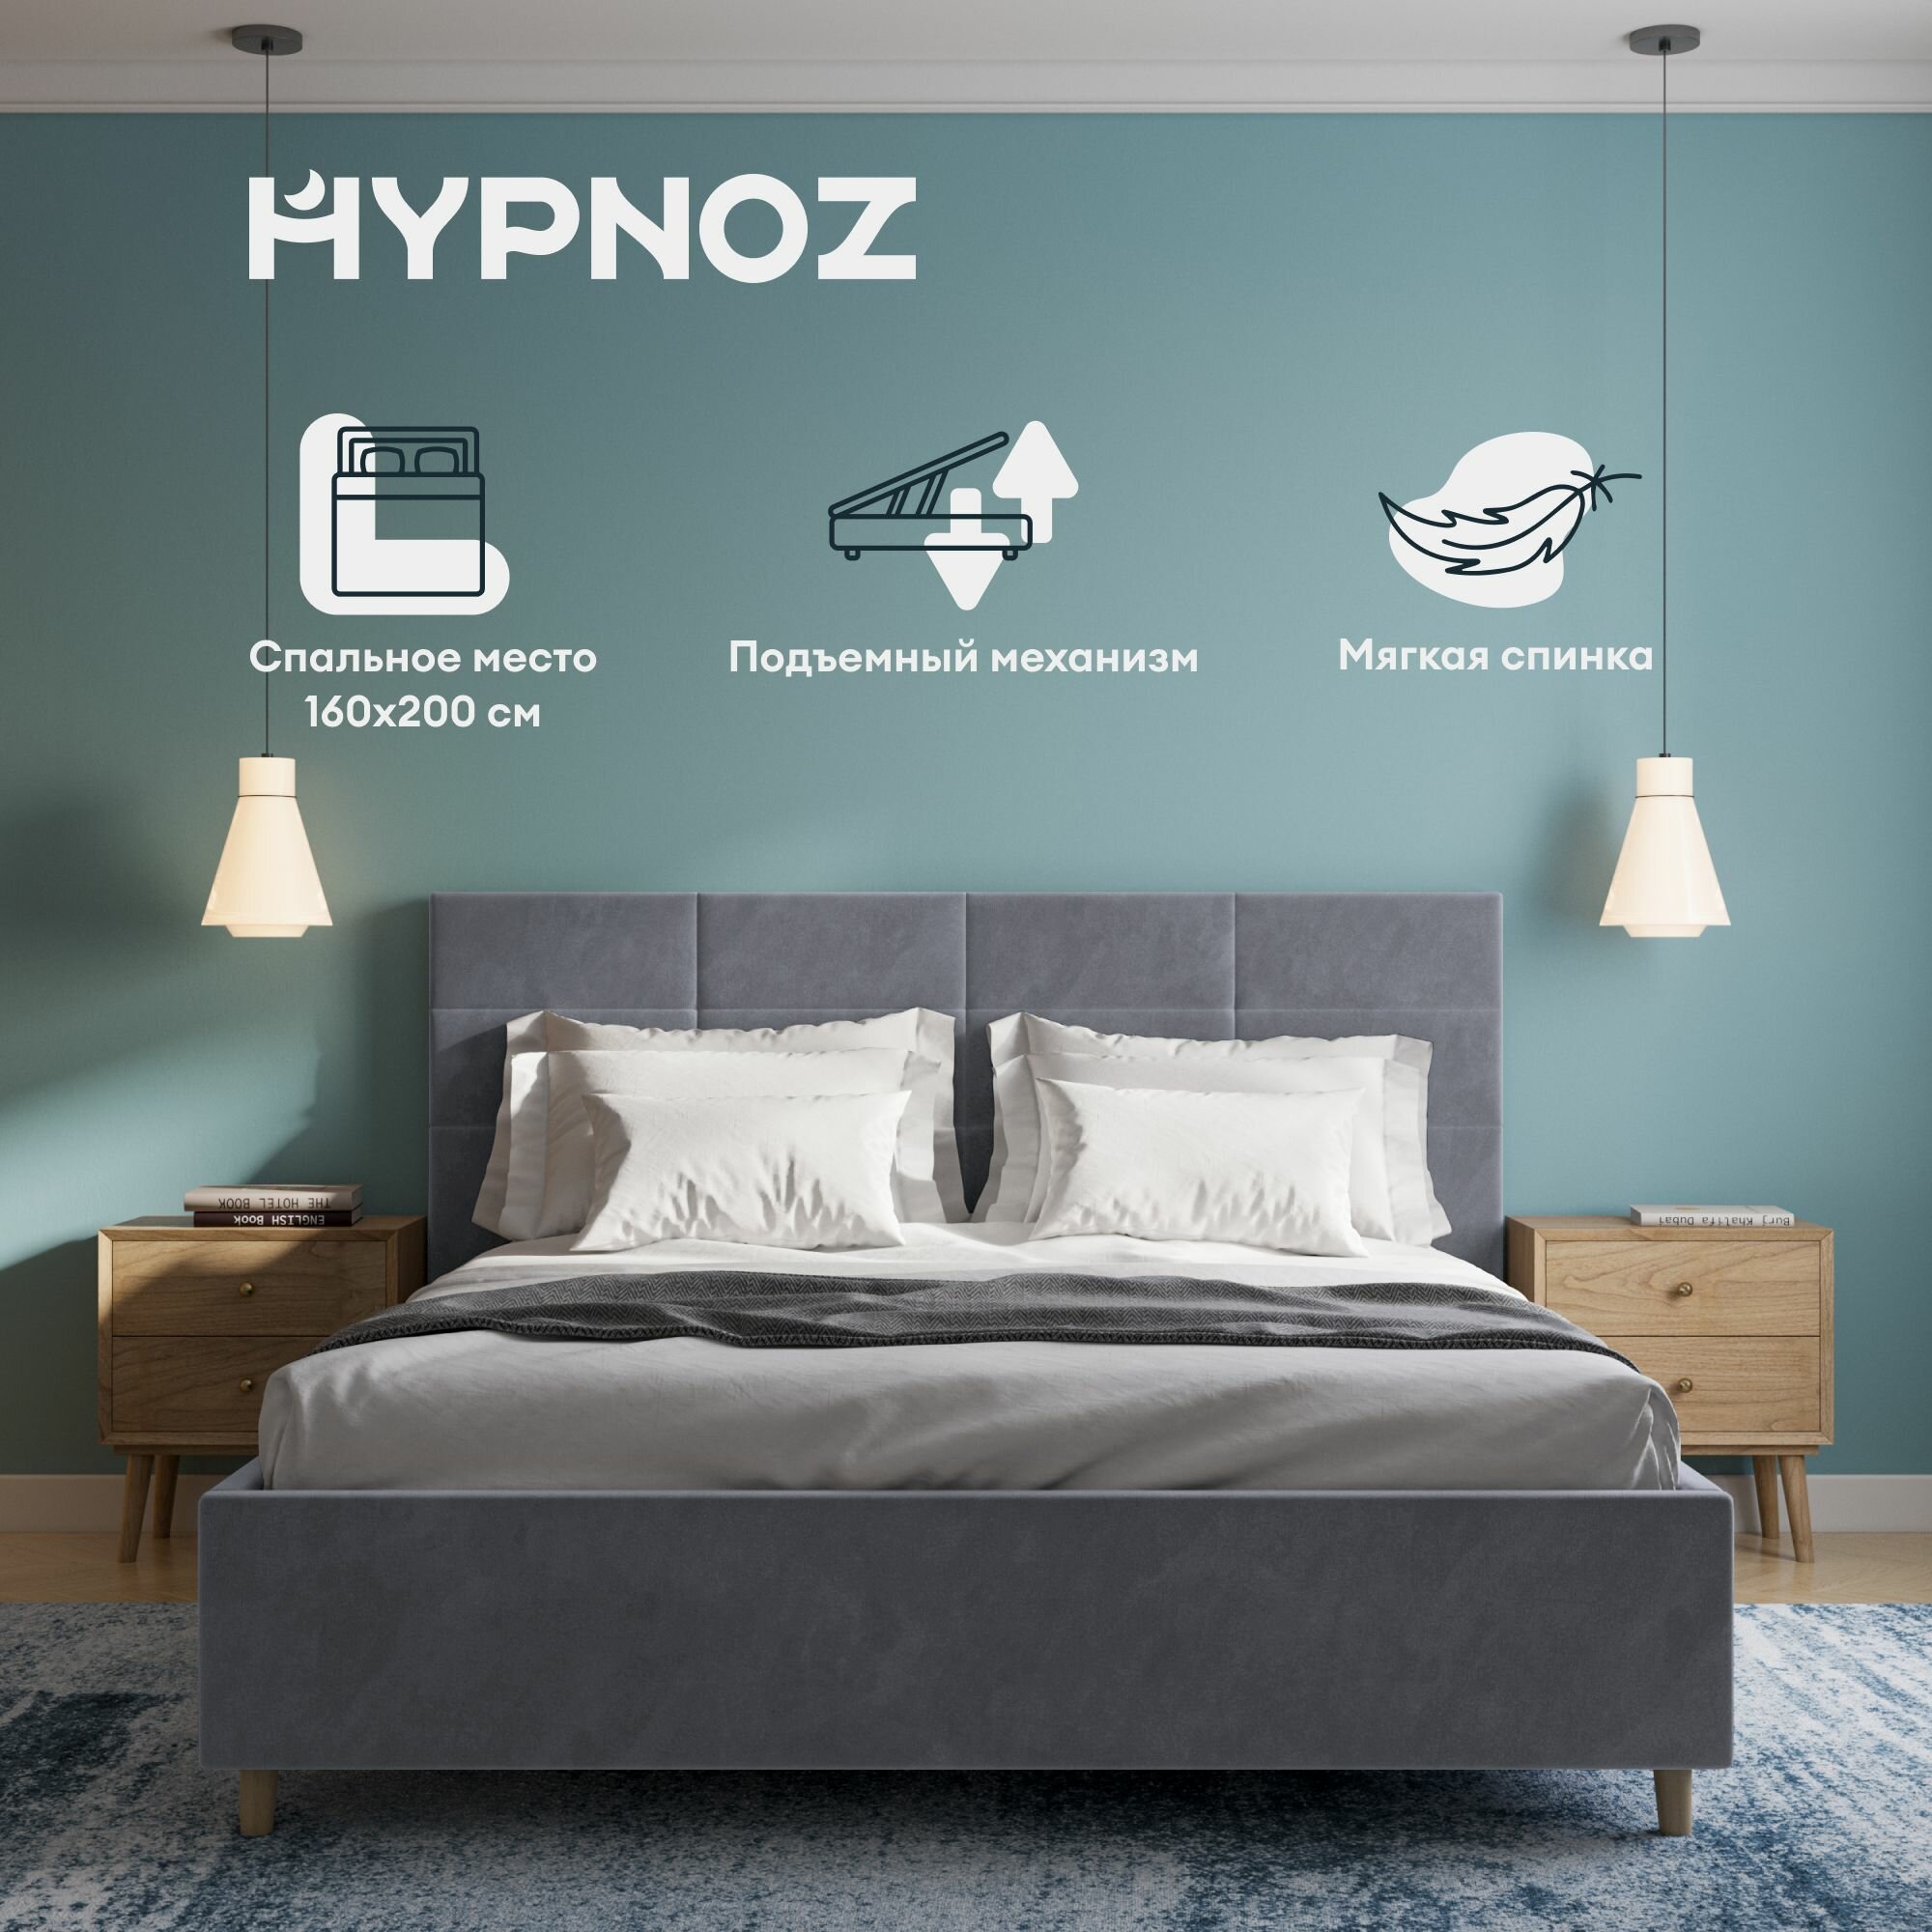 Кровать HYPNOZ Navia 200x160, с подъемным механизмом, Велюр, Темно-серый